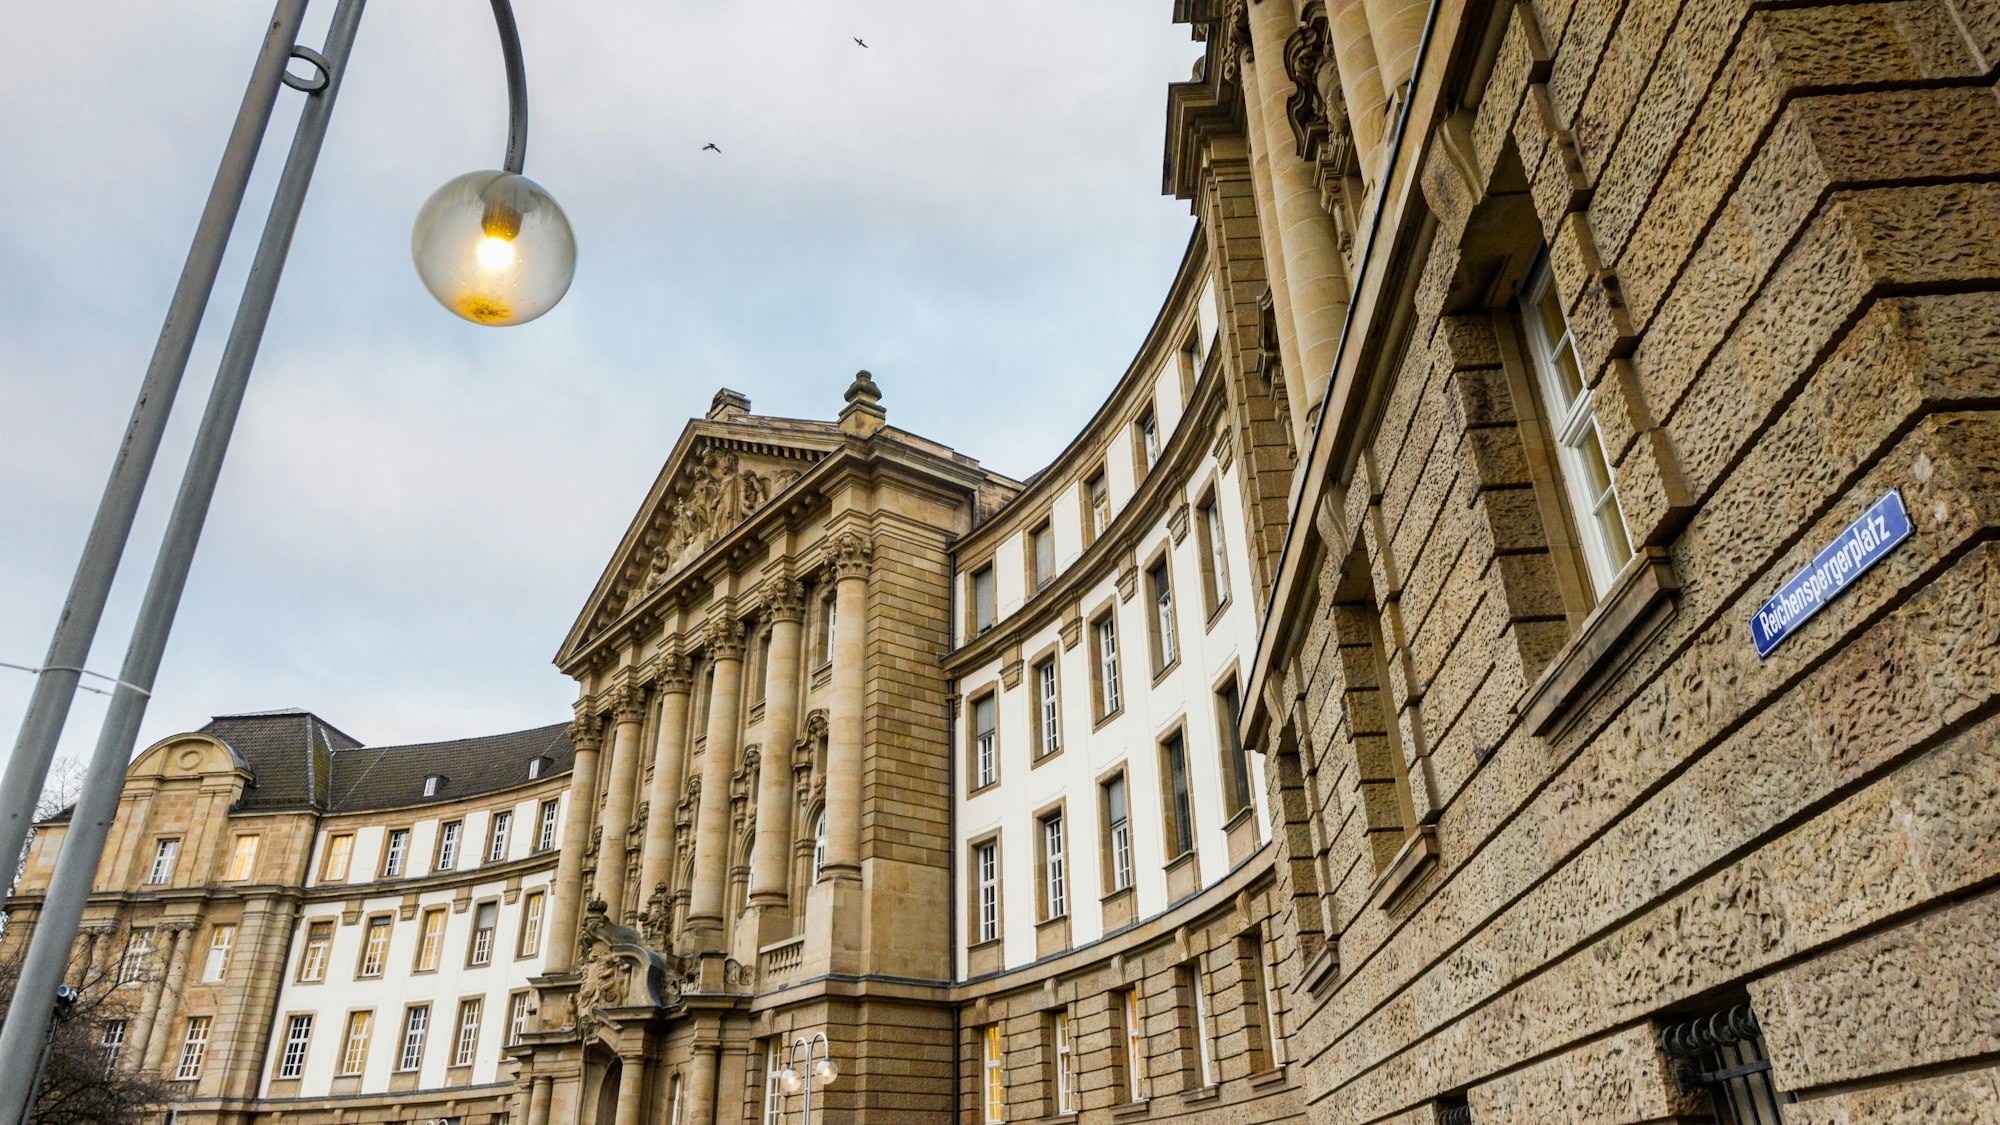 Das Oberlandesgericht am Reichensperger Platz in Köln. In einem brisanten Prozess um Missbrauchsvorwürfe gegen einen Priester will das Gericht nun ein mutmaßliches Opfer als Zeugen hören. (Archivbild)